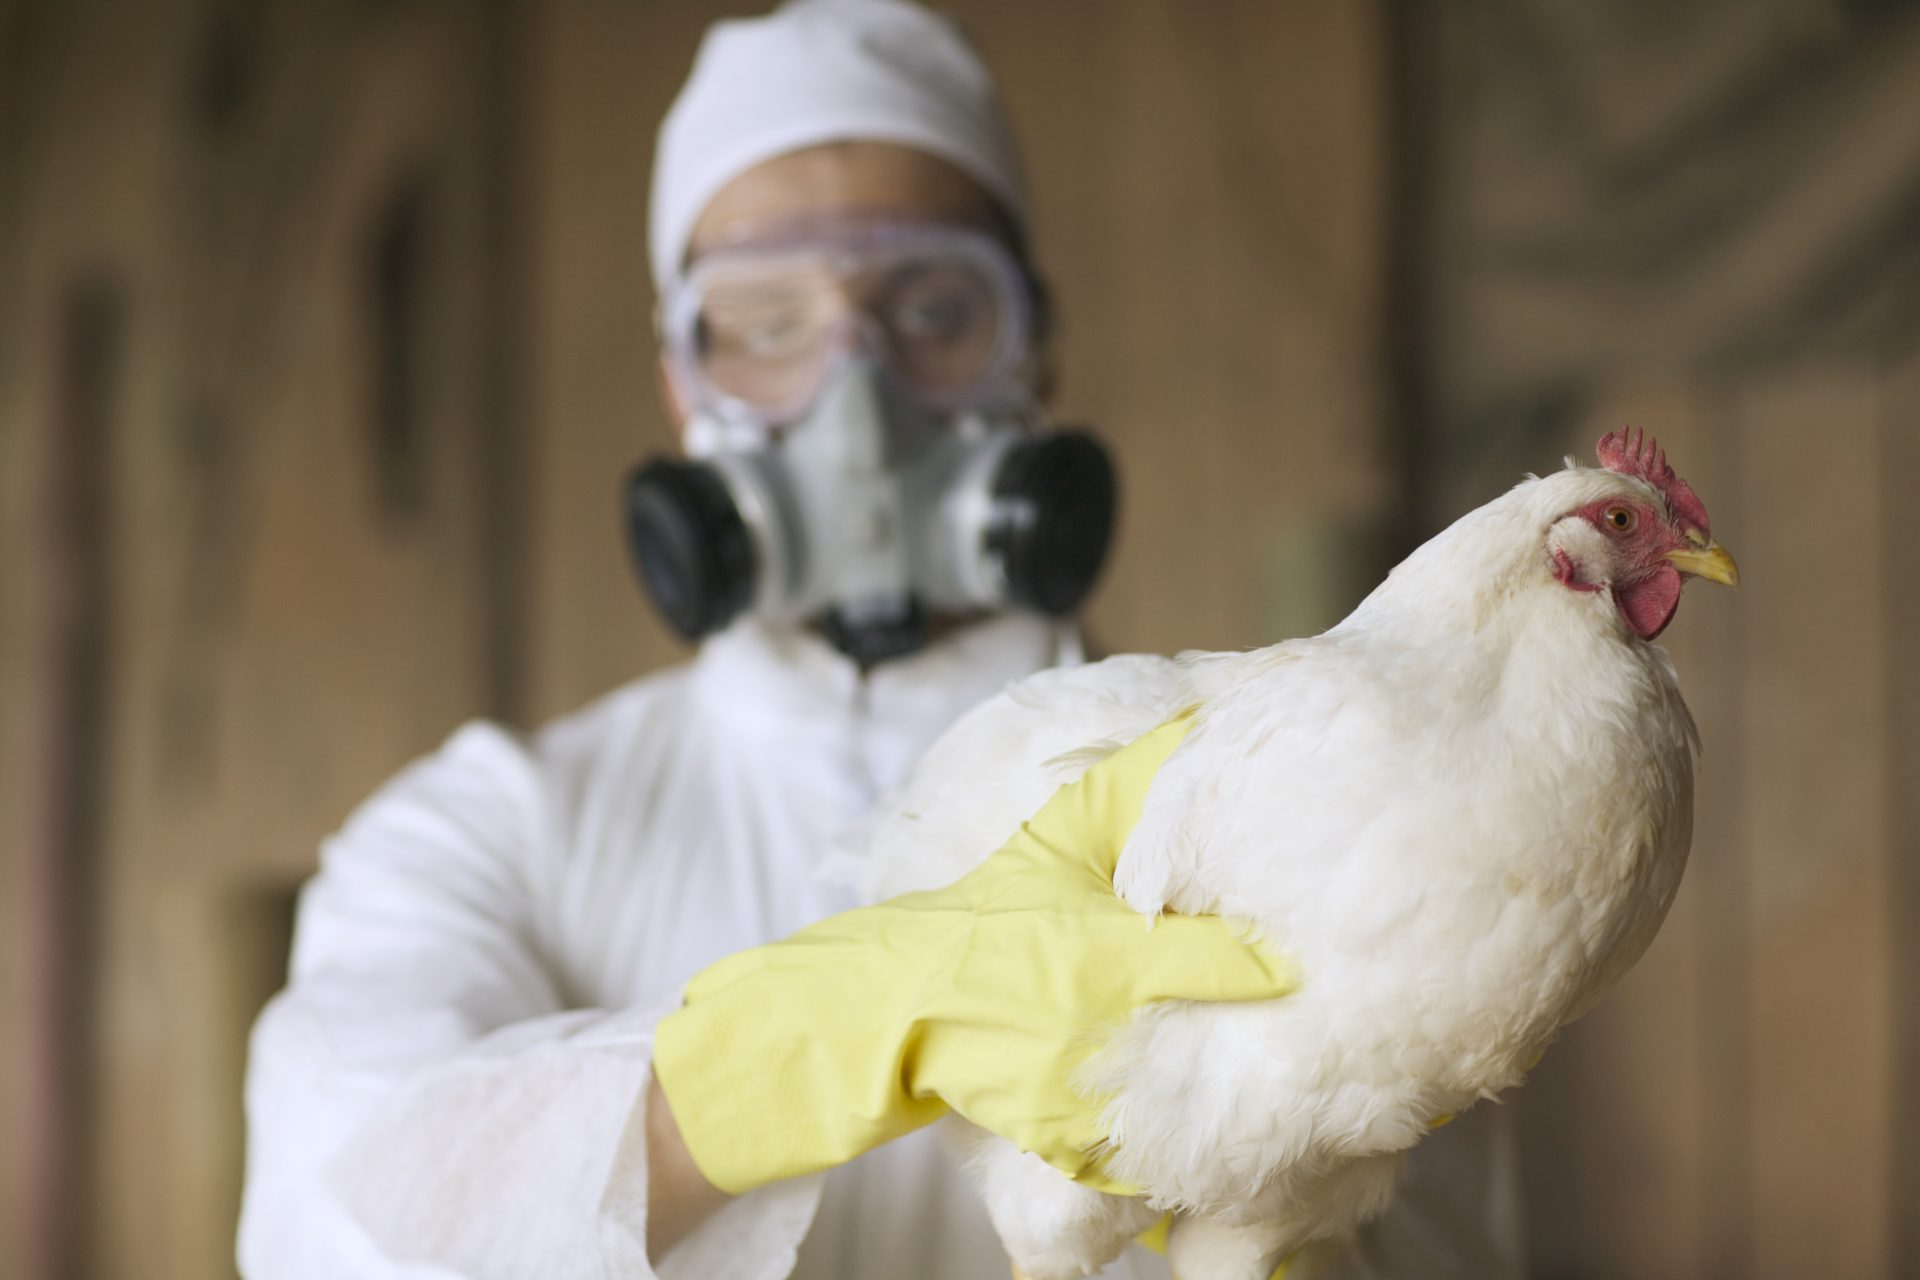 Vogelgrippe betrifft Millionen von Tieren und hat bereits den Menschen erreicht